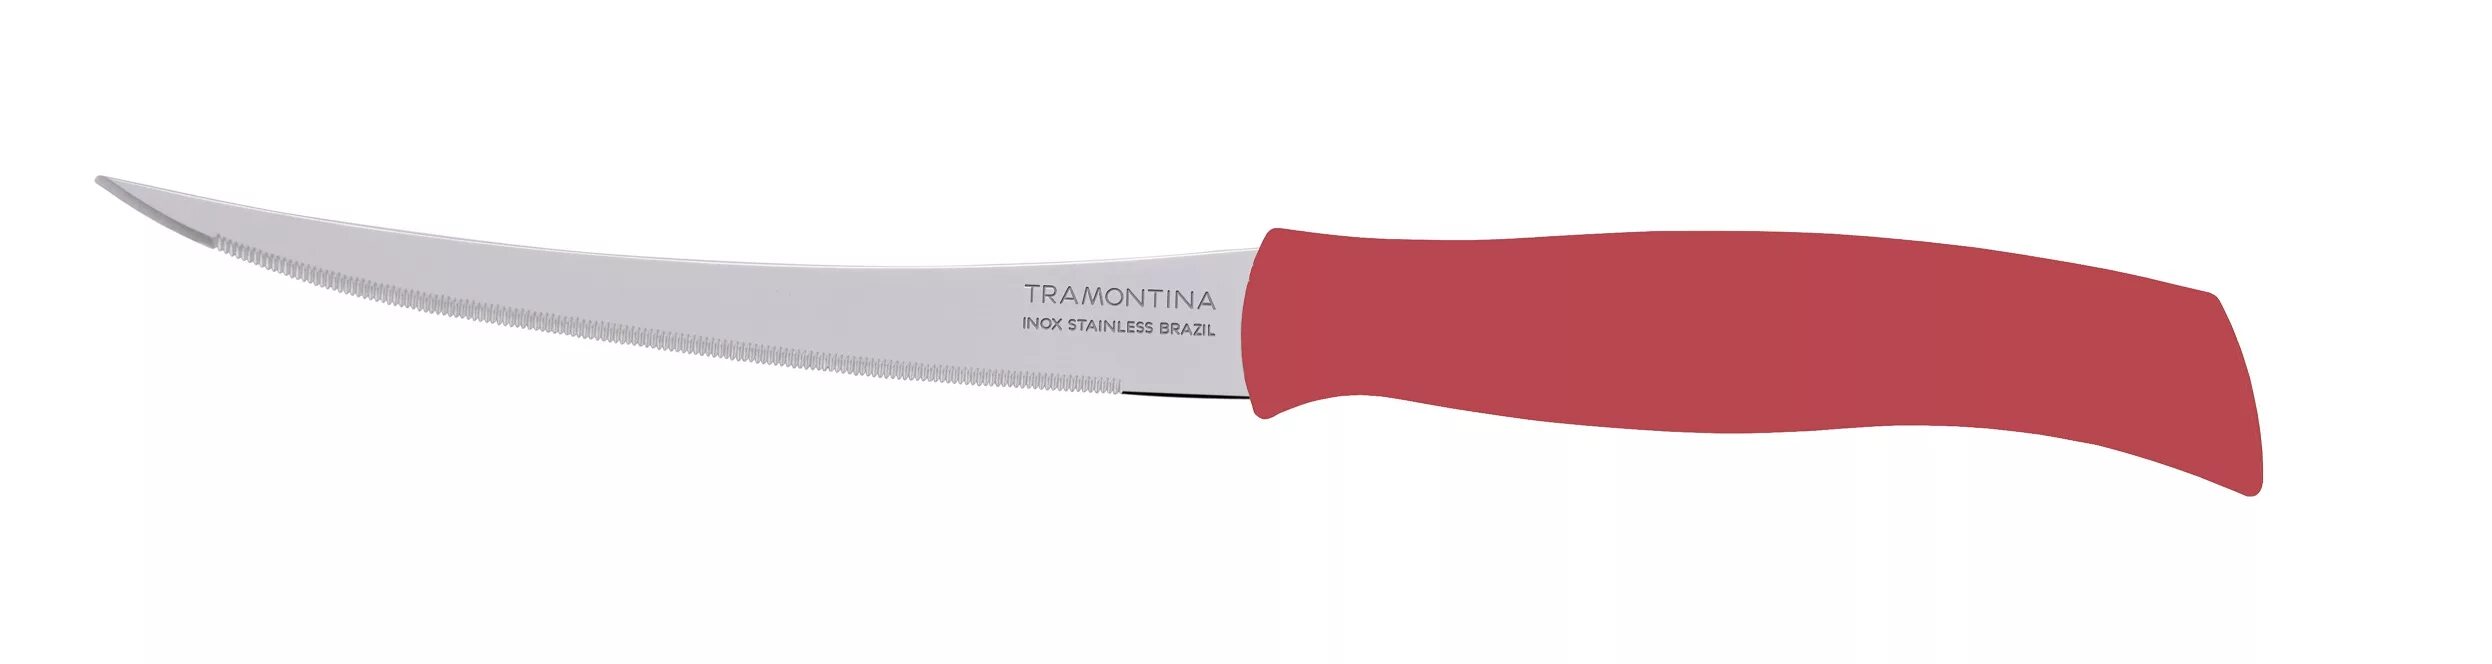 Нож для томатов. Нож для томатов 5" "Tramontina" Athus. Трамонтина красный нож для томатов 100сп. Нож д/томатов 12,5см бел. Athus 23088/085. 23428/065 Нож для помидоров/цитрусовых Plenus 12,5см.